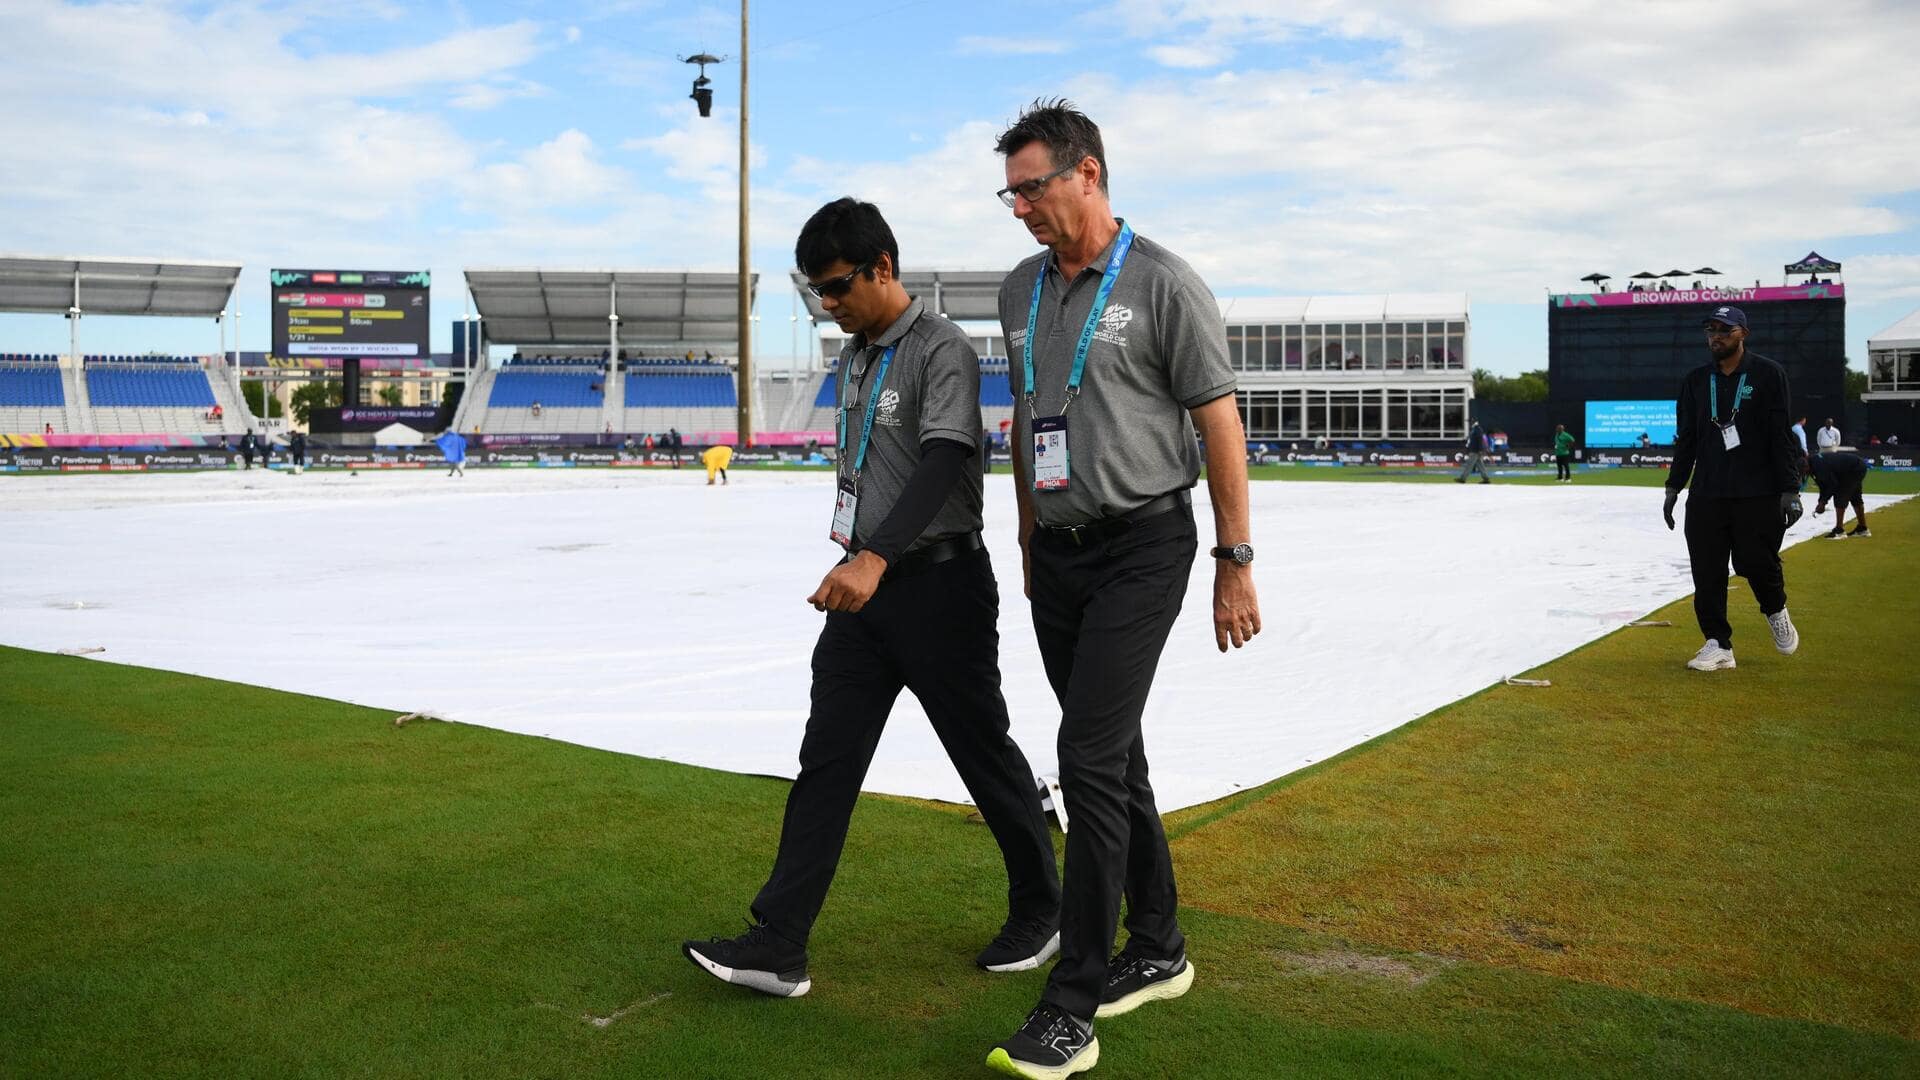 USA बनाम आयरलैंड: बारिश के चलते रद्द हुआ मैच, पाकिस्तान सुपर-8 की दौड़ से बाहर